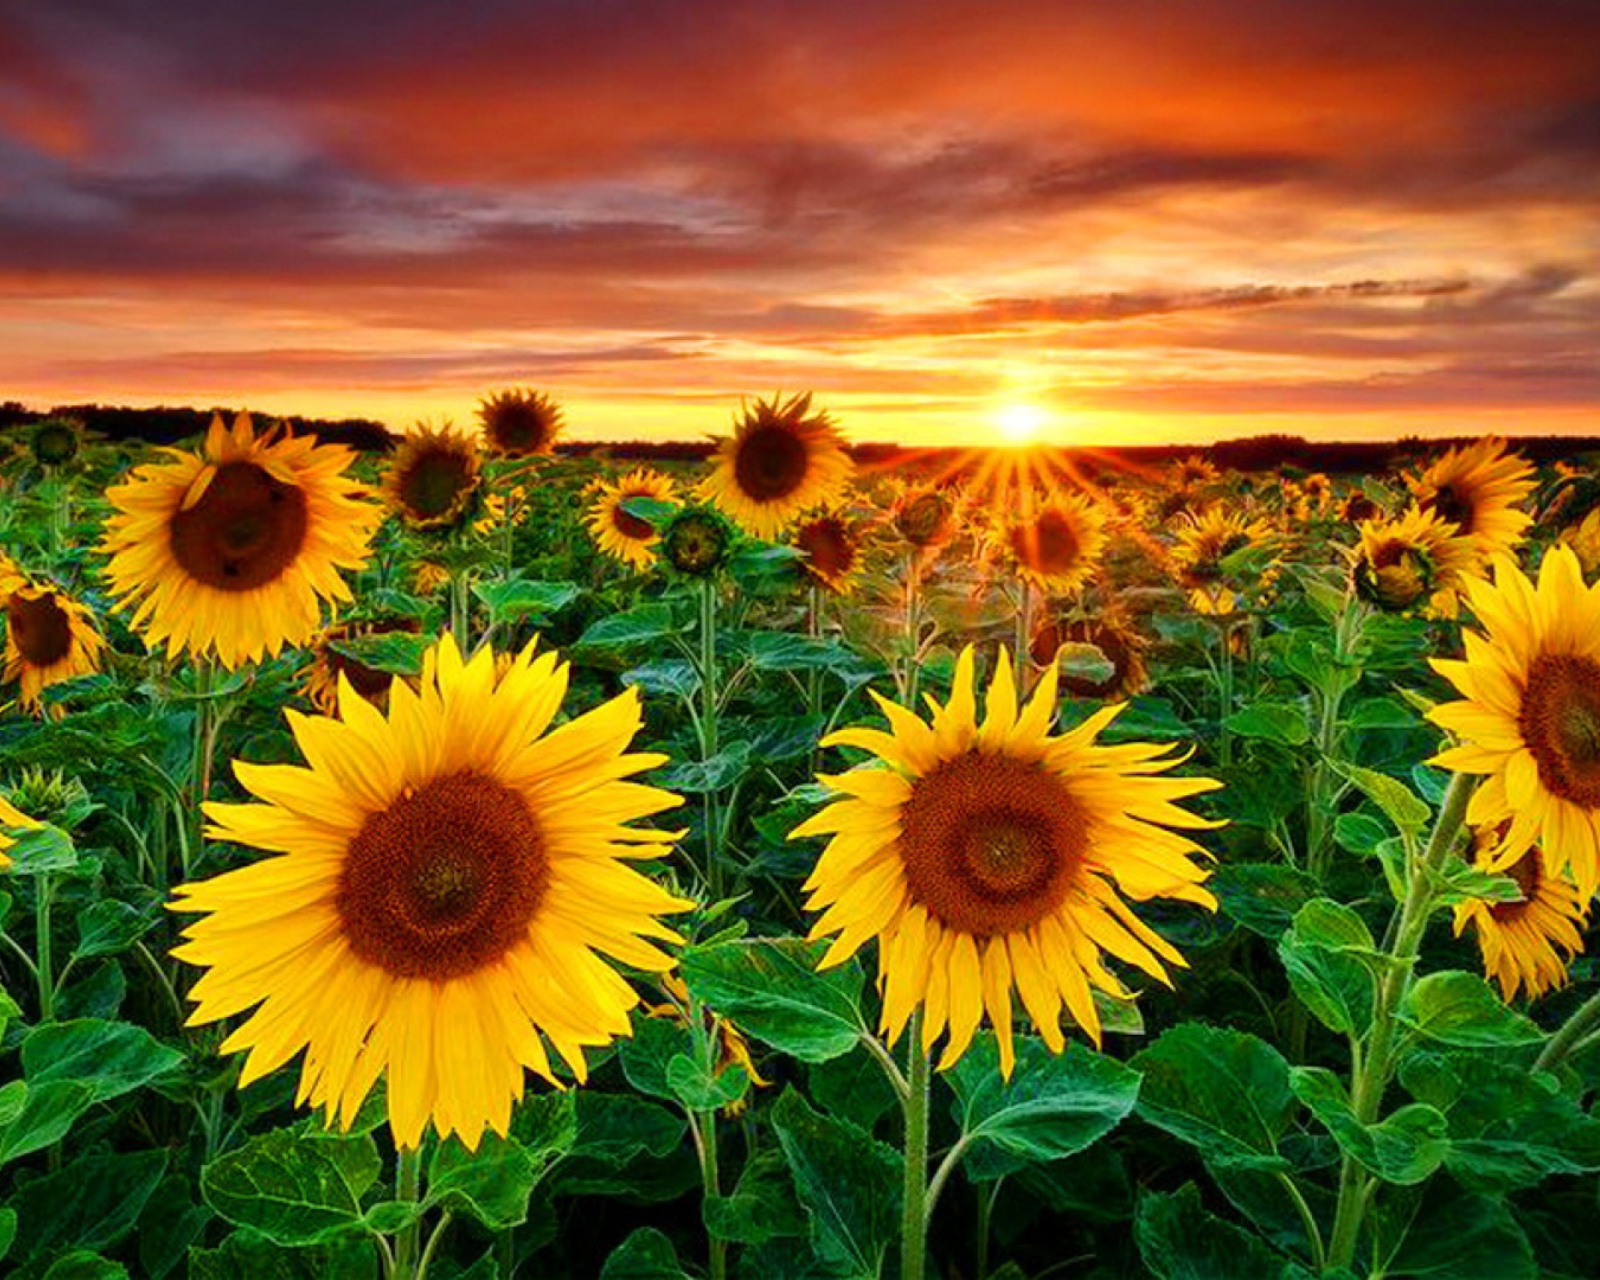 Beautiful Sunflower Field At Sunset wallpaper 1600x1280